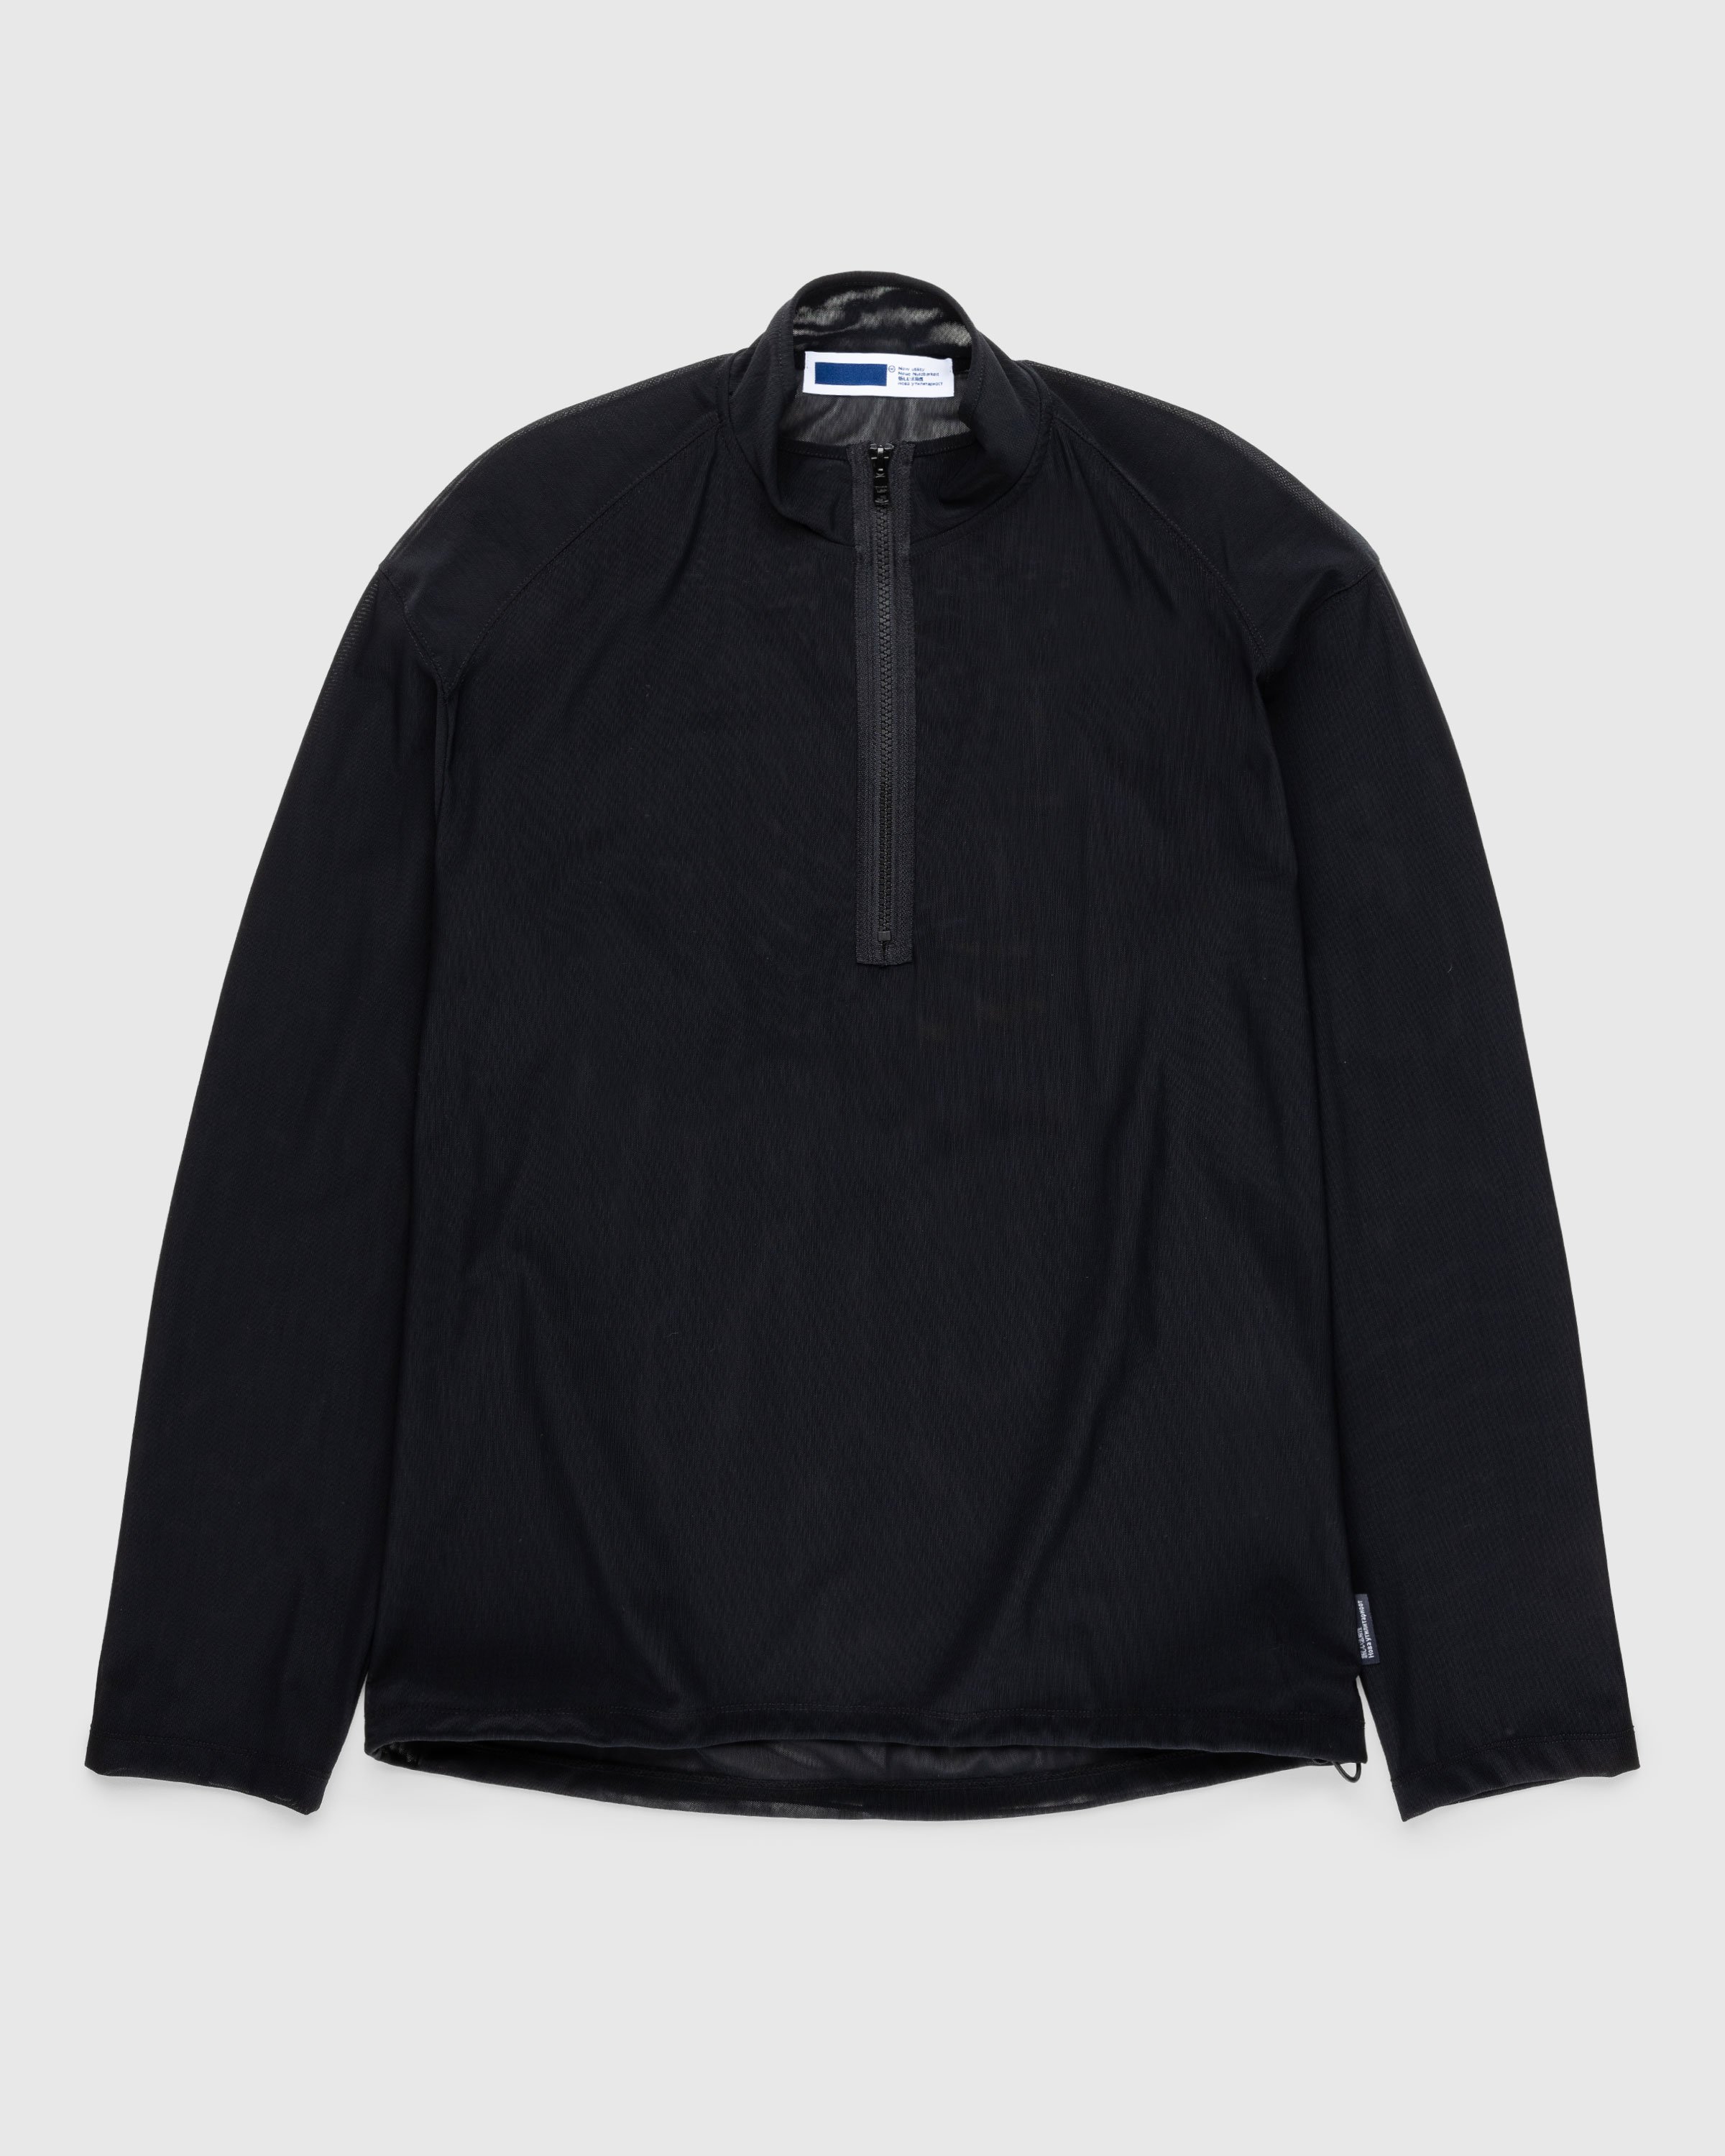 AFFXWRKS - Transit Mesh Pullover Black - Clothing - Black - Image 1